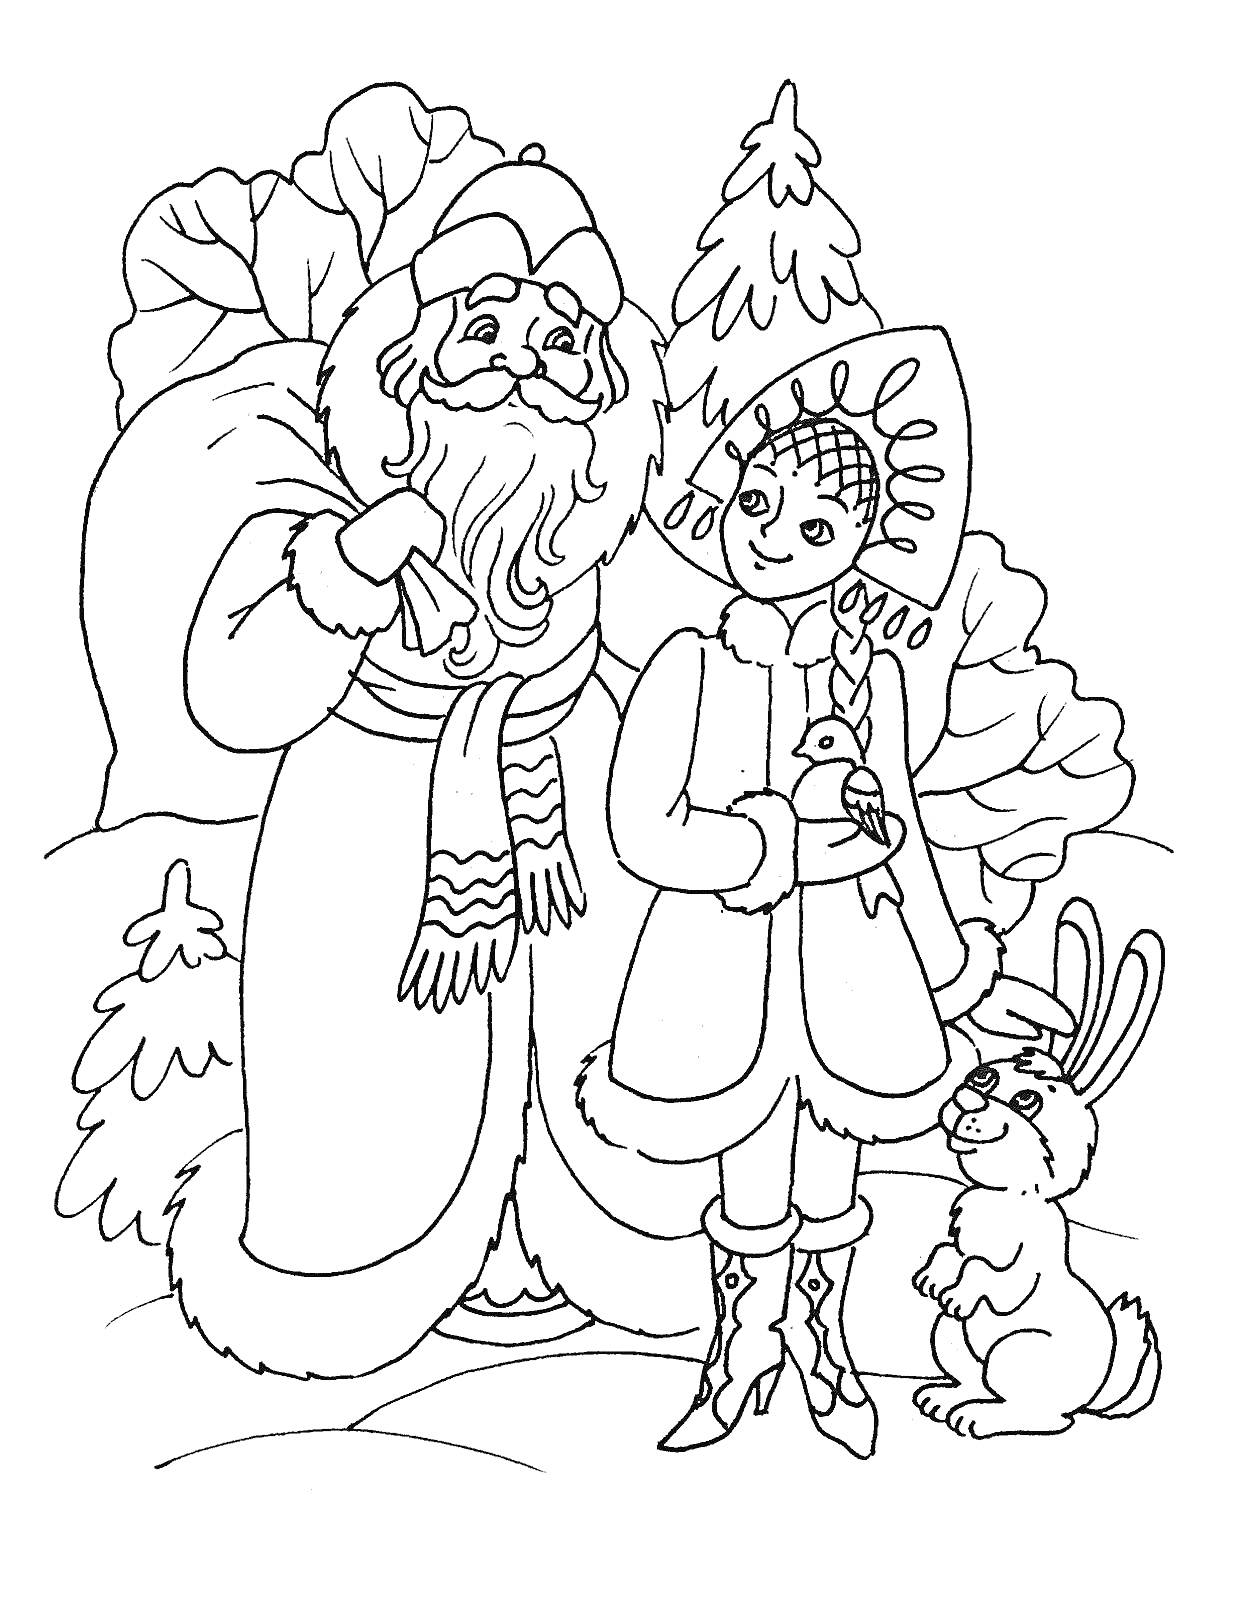 Раскраска Дед Мороз и Снегурочка с зайцем на зимнем фоне, ёлки, птица в руках Снегурочки